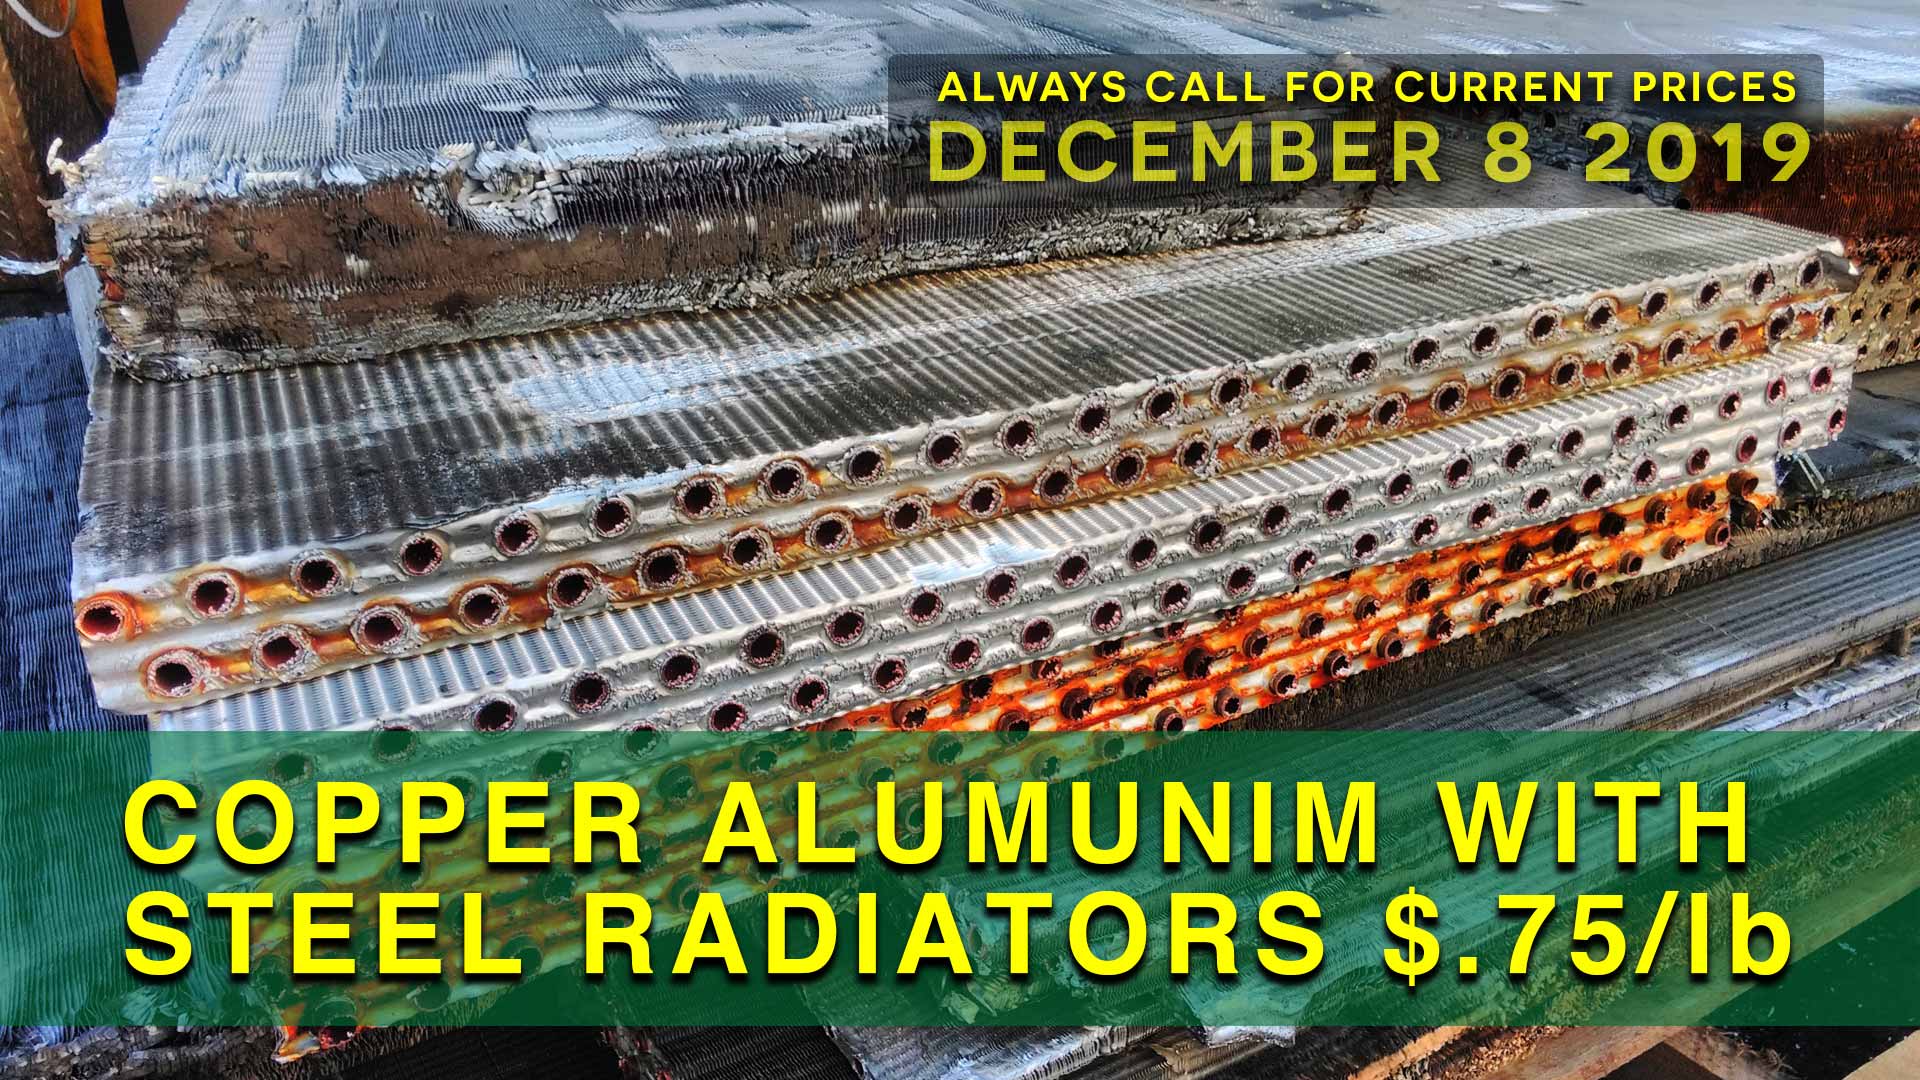 Copper Aluminum Radiators with Steel $.75 lb.